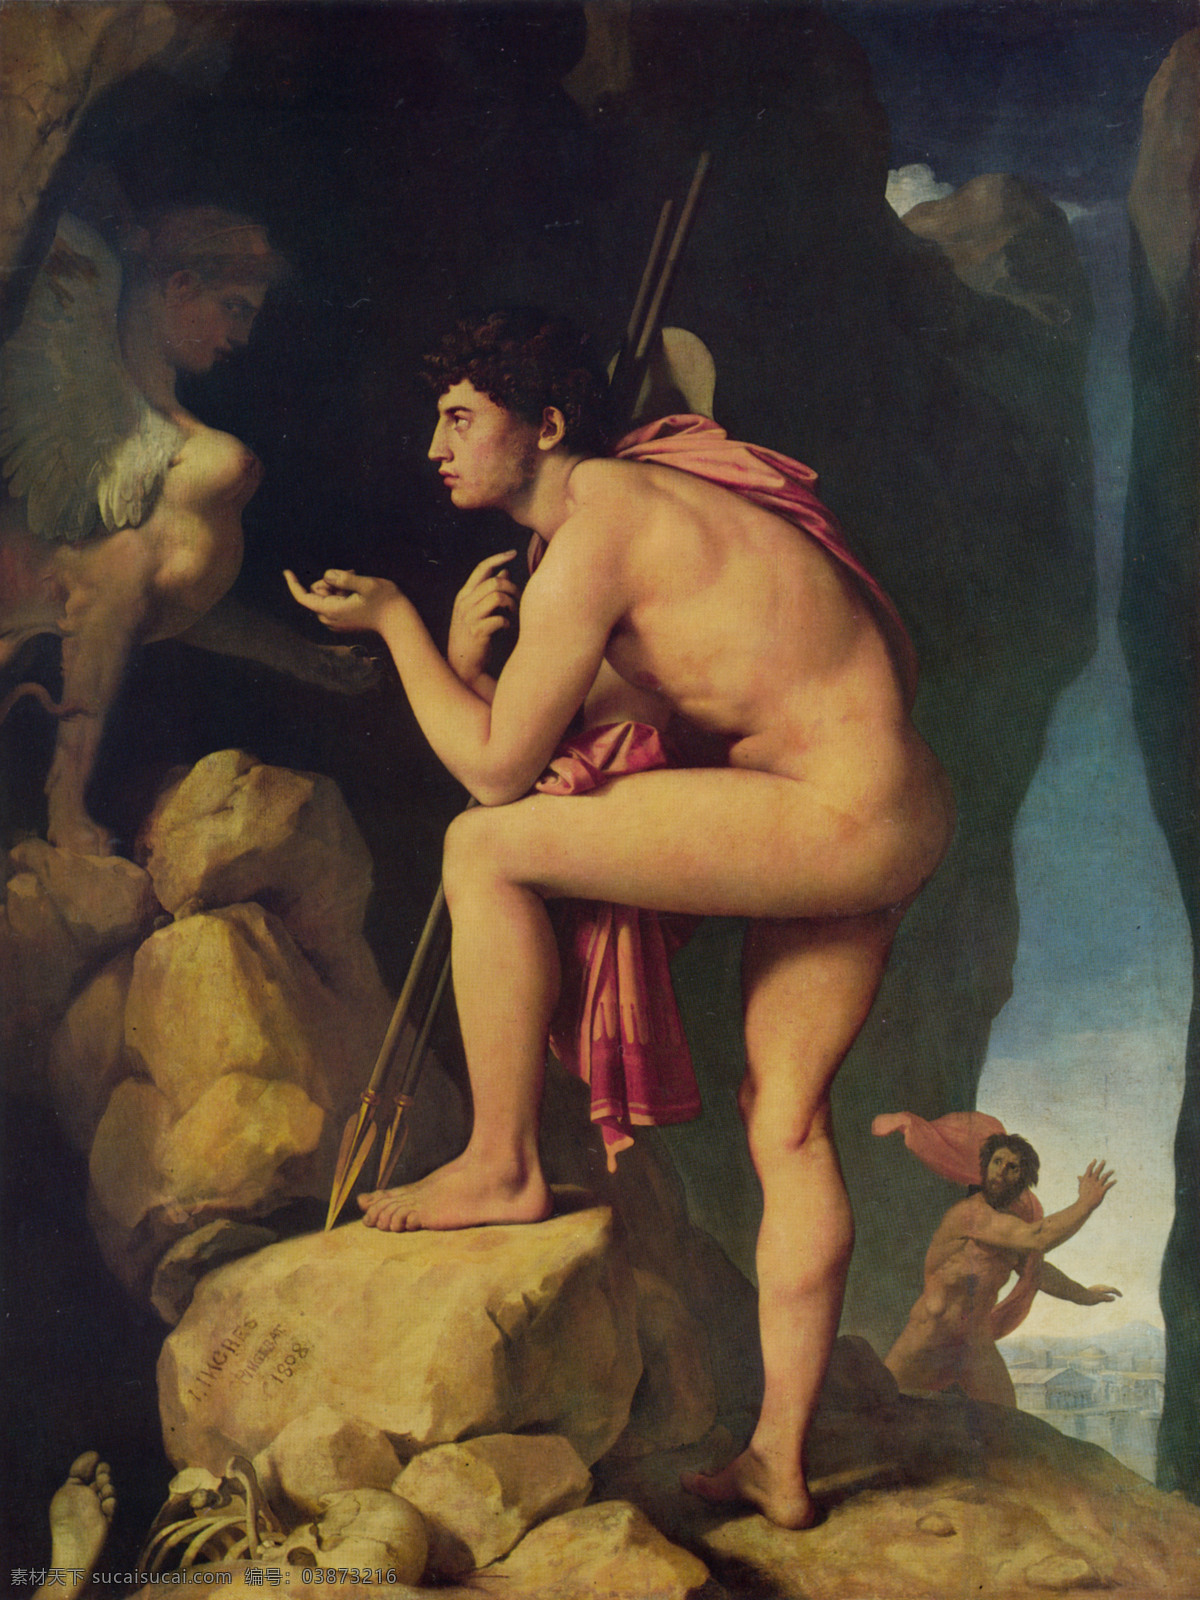 安格尔 油画 神话 大师油画 浪漫主义 人体 神话题材 装饰素材